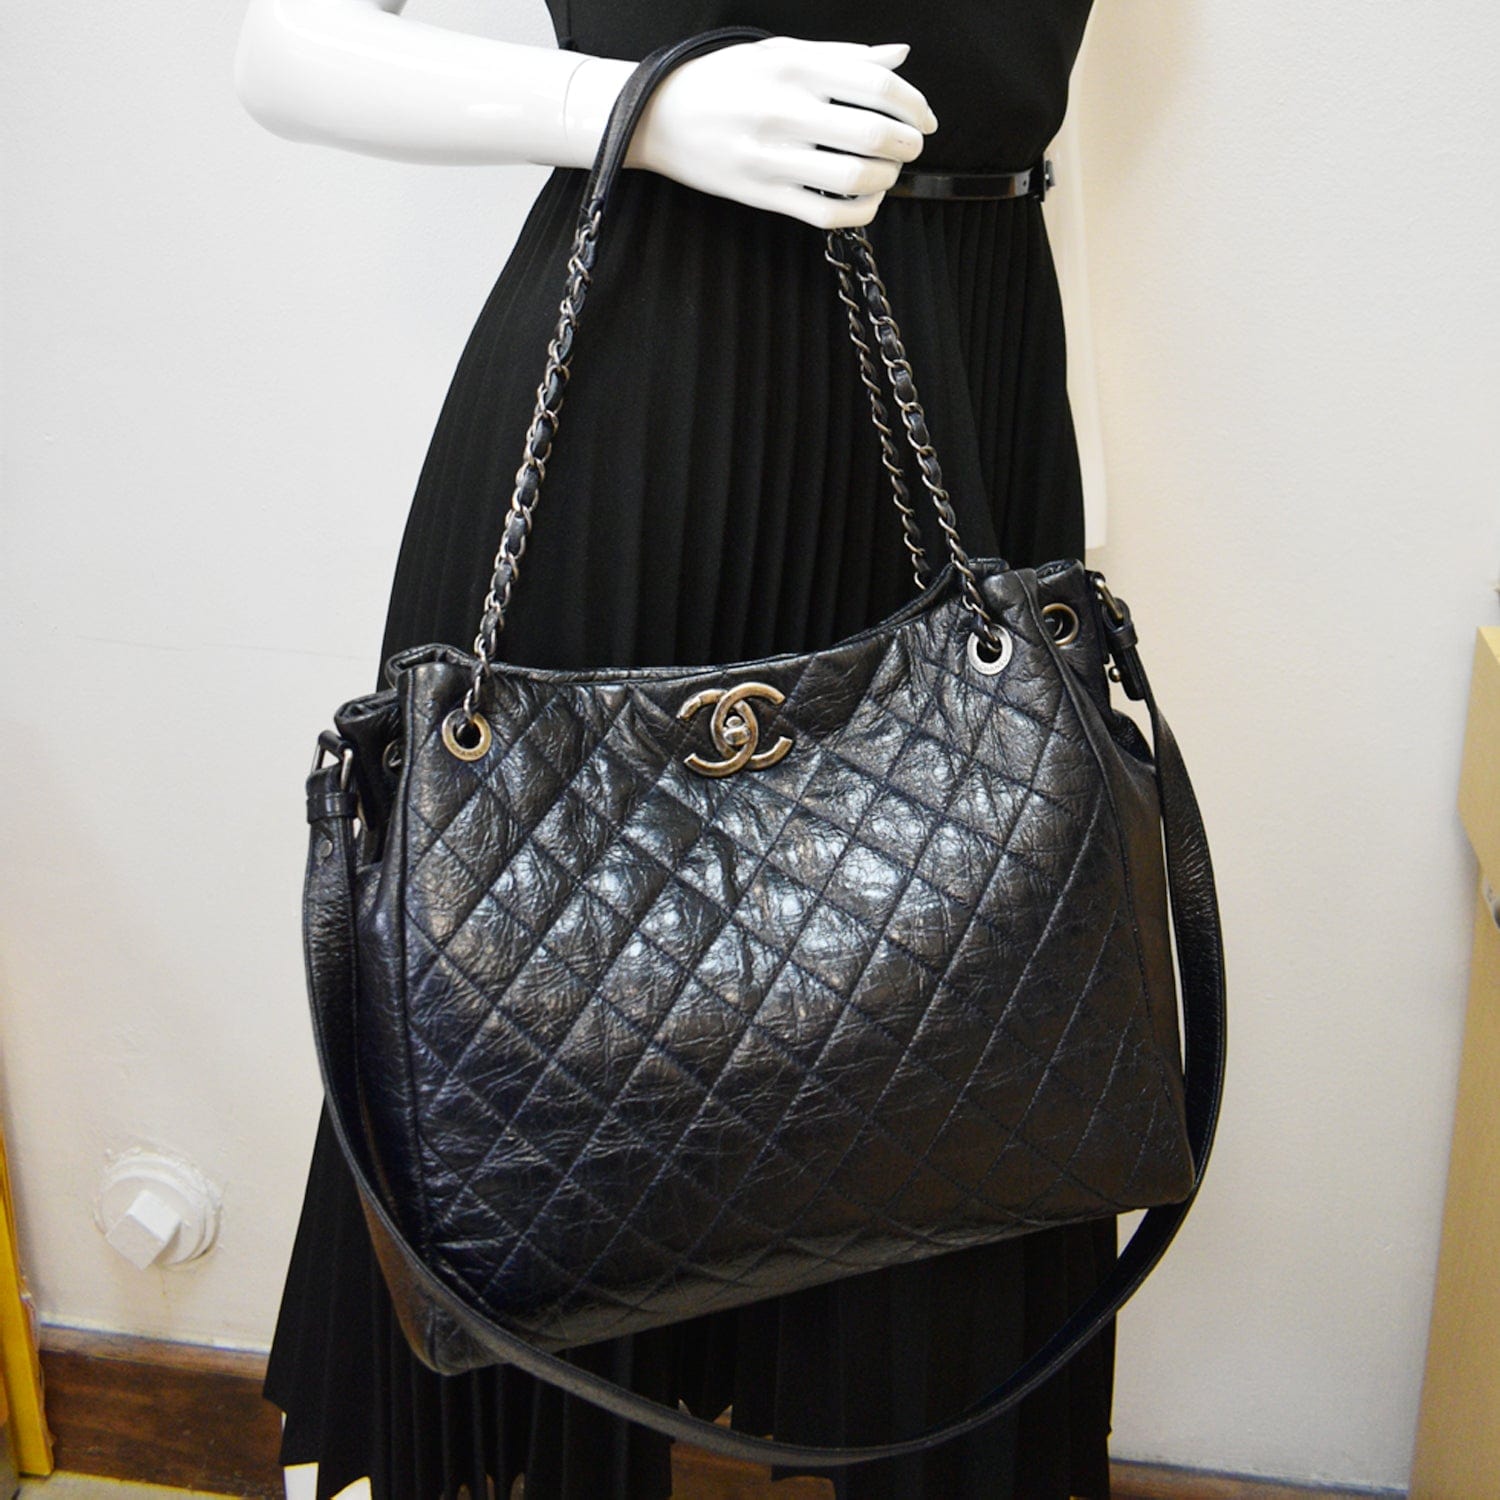 Chanel Large Blue Black Gabrielle Bag - Vintage Lux